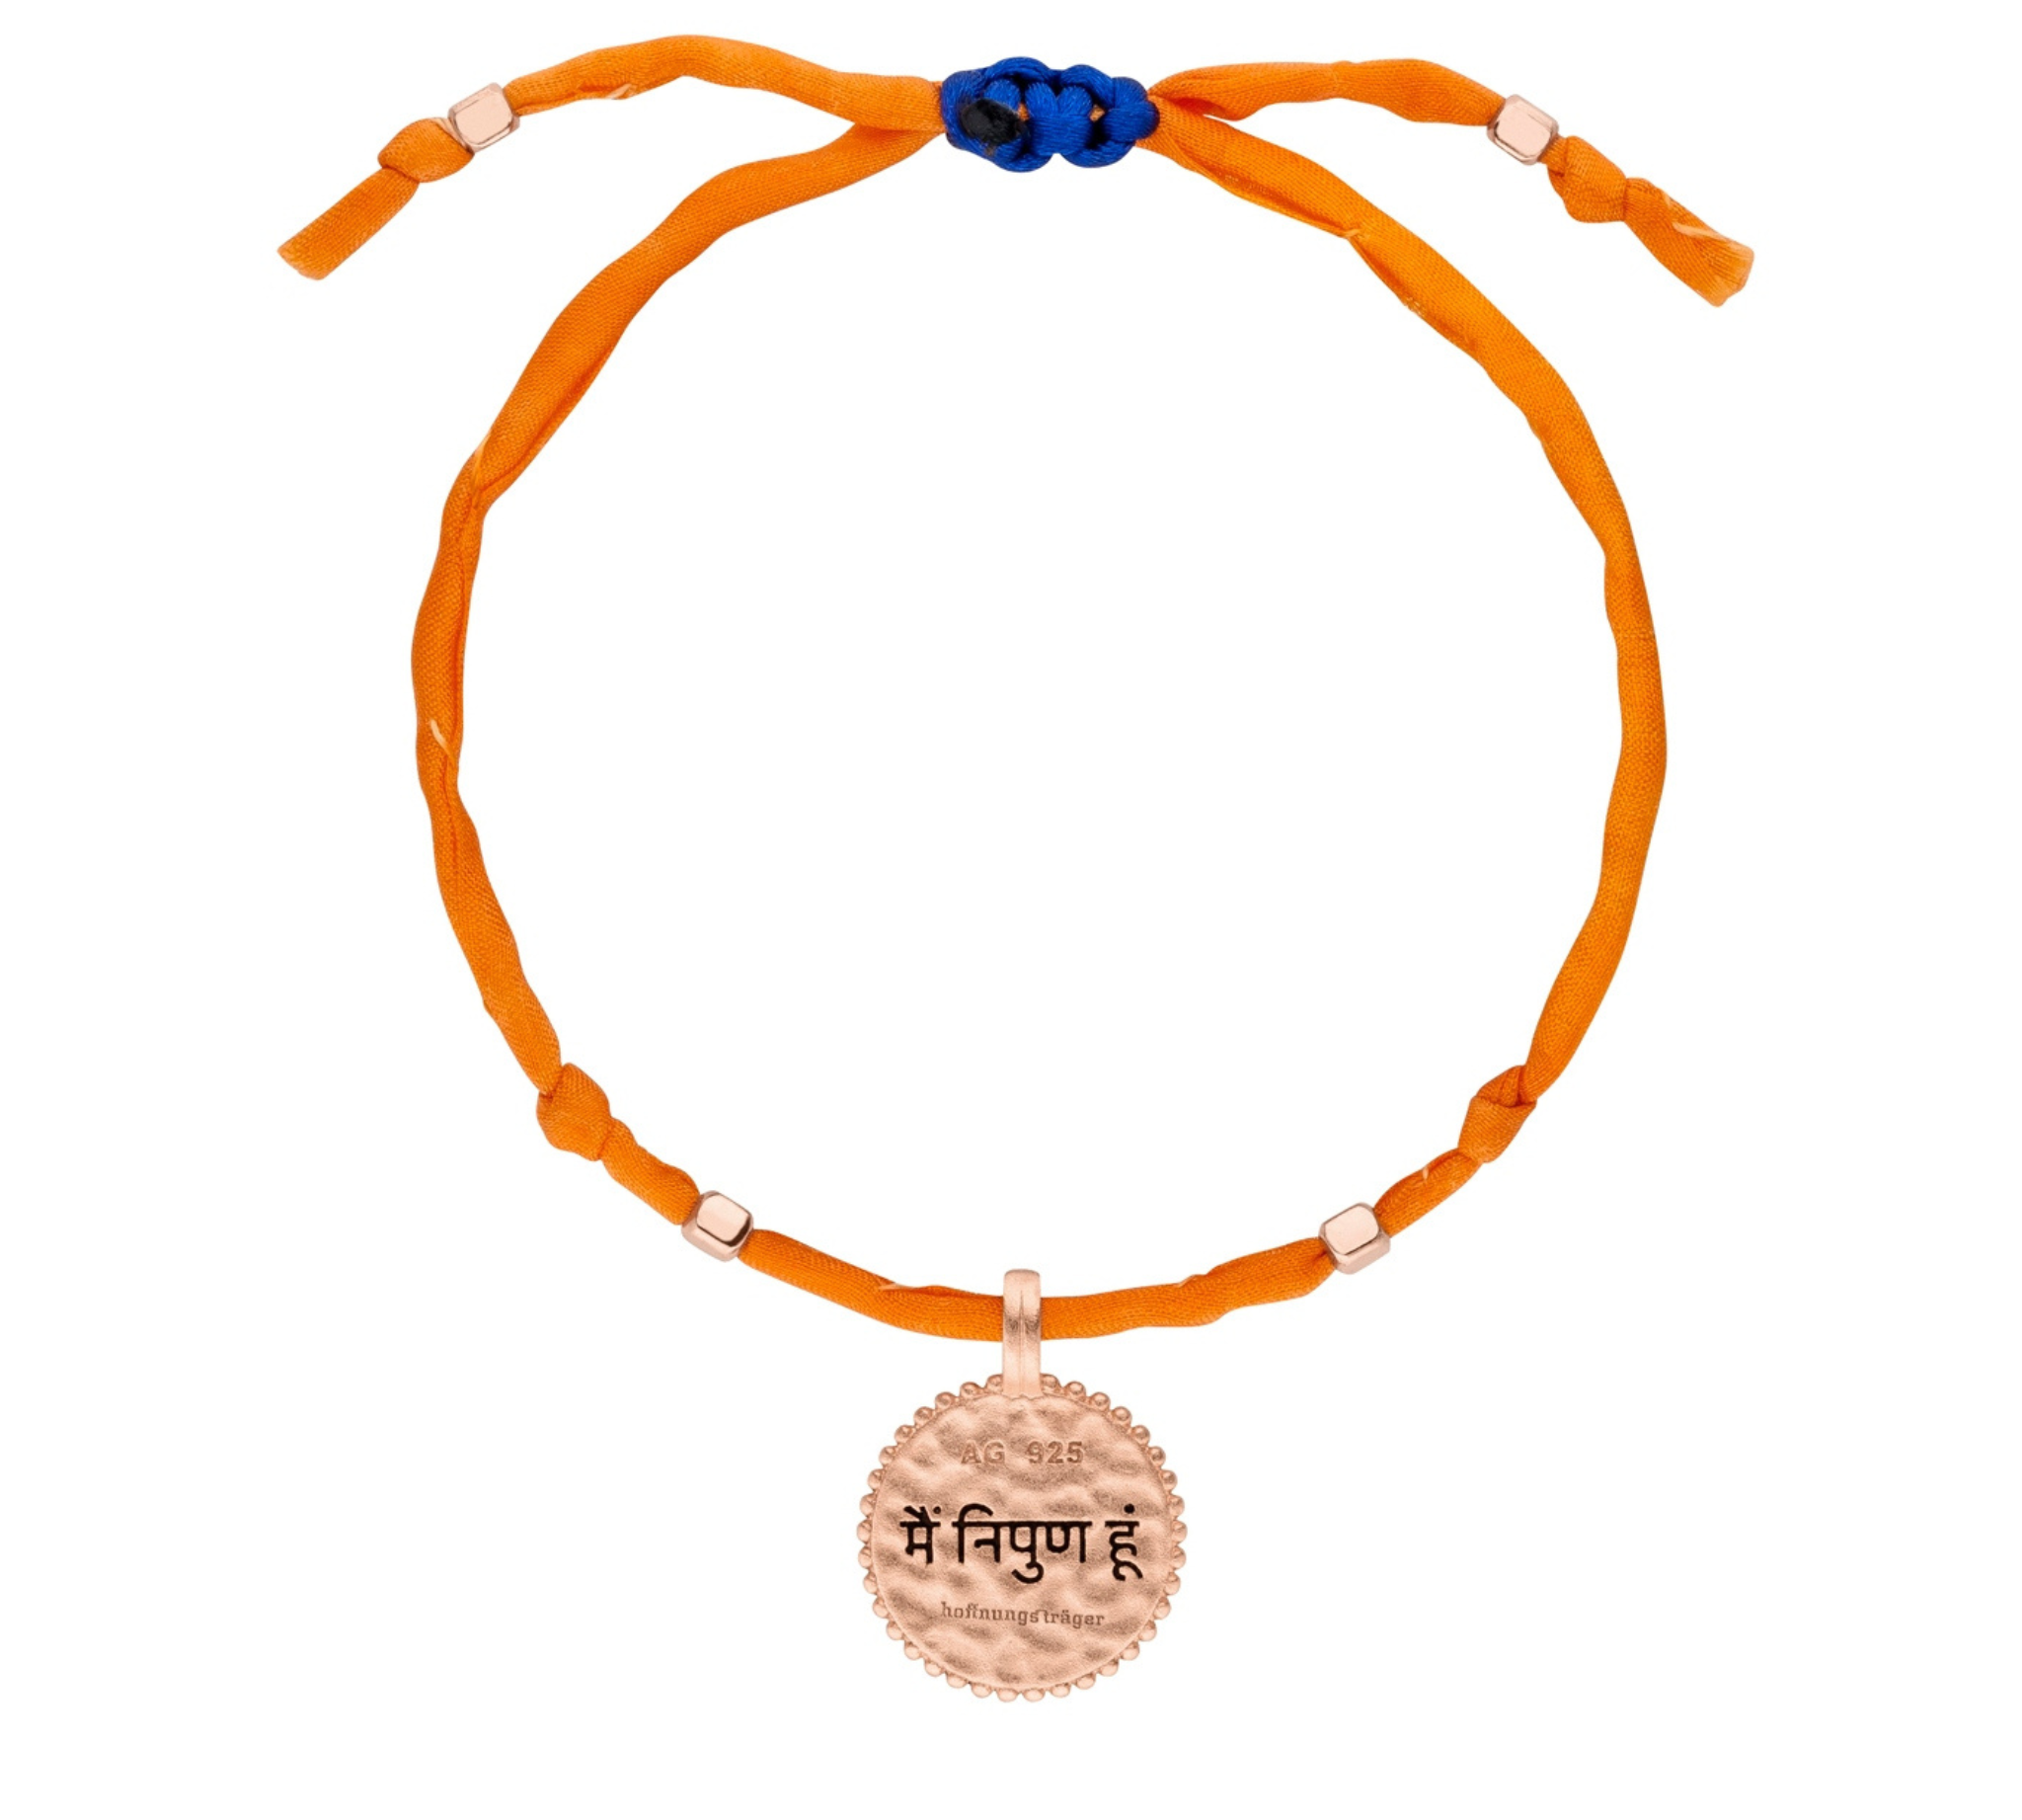 Seidenarmband in Orange mit Anhänger I am Perfect aus 925 Silber vergoldet. Wendbarer Anhänger. Tolles Yoga-Armband mit Bedeutung.